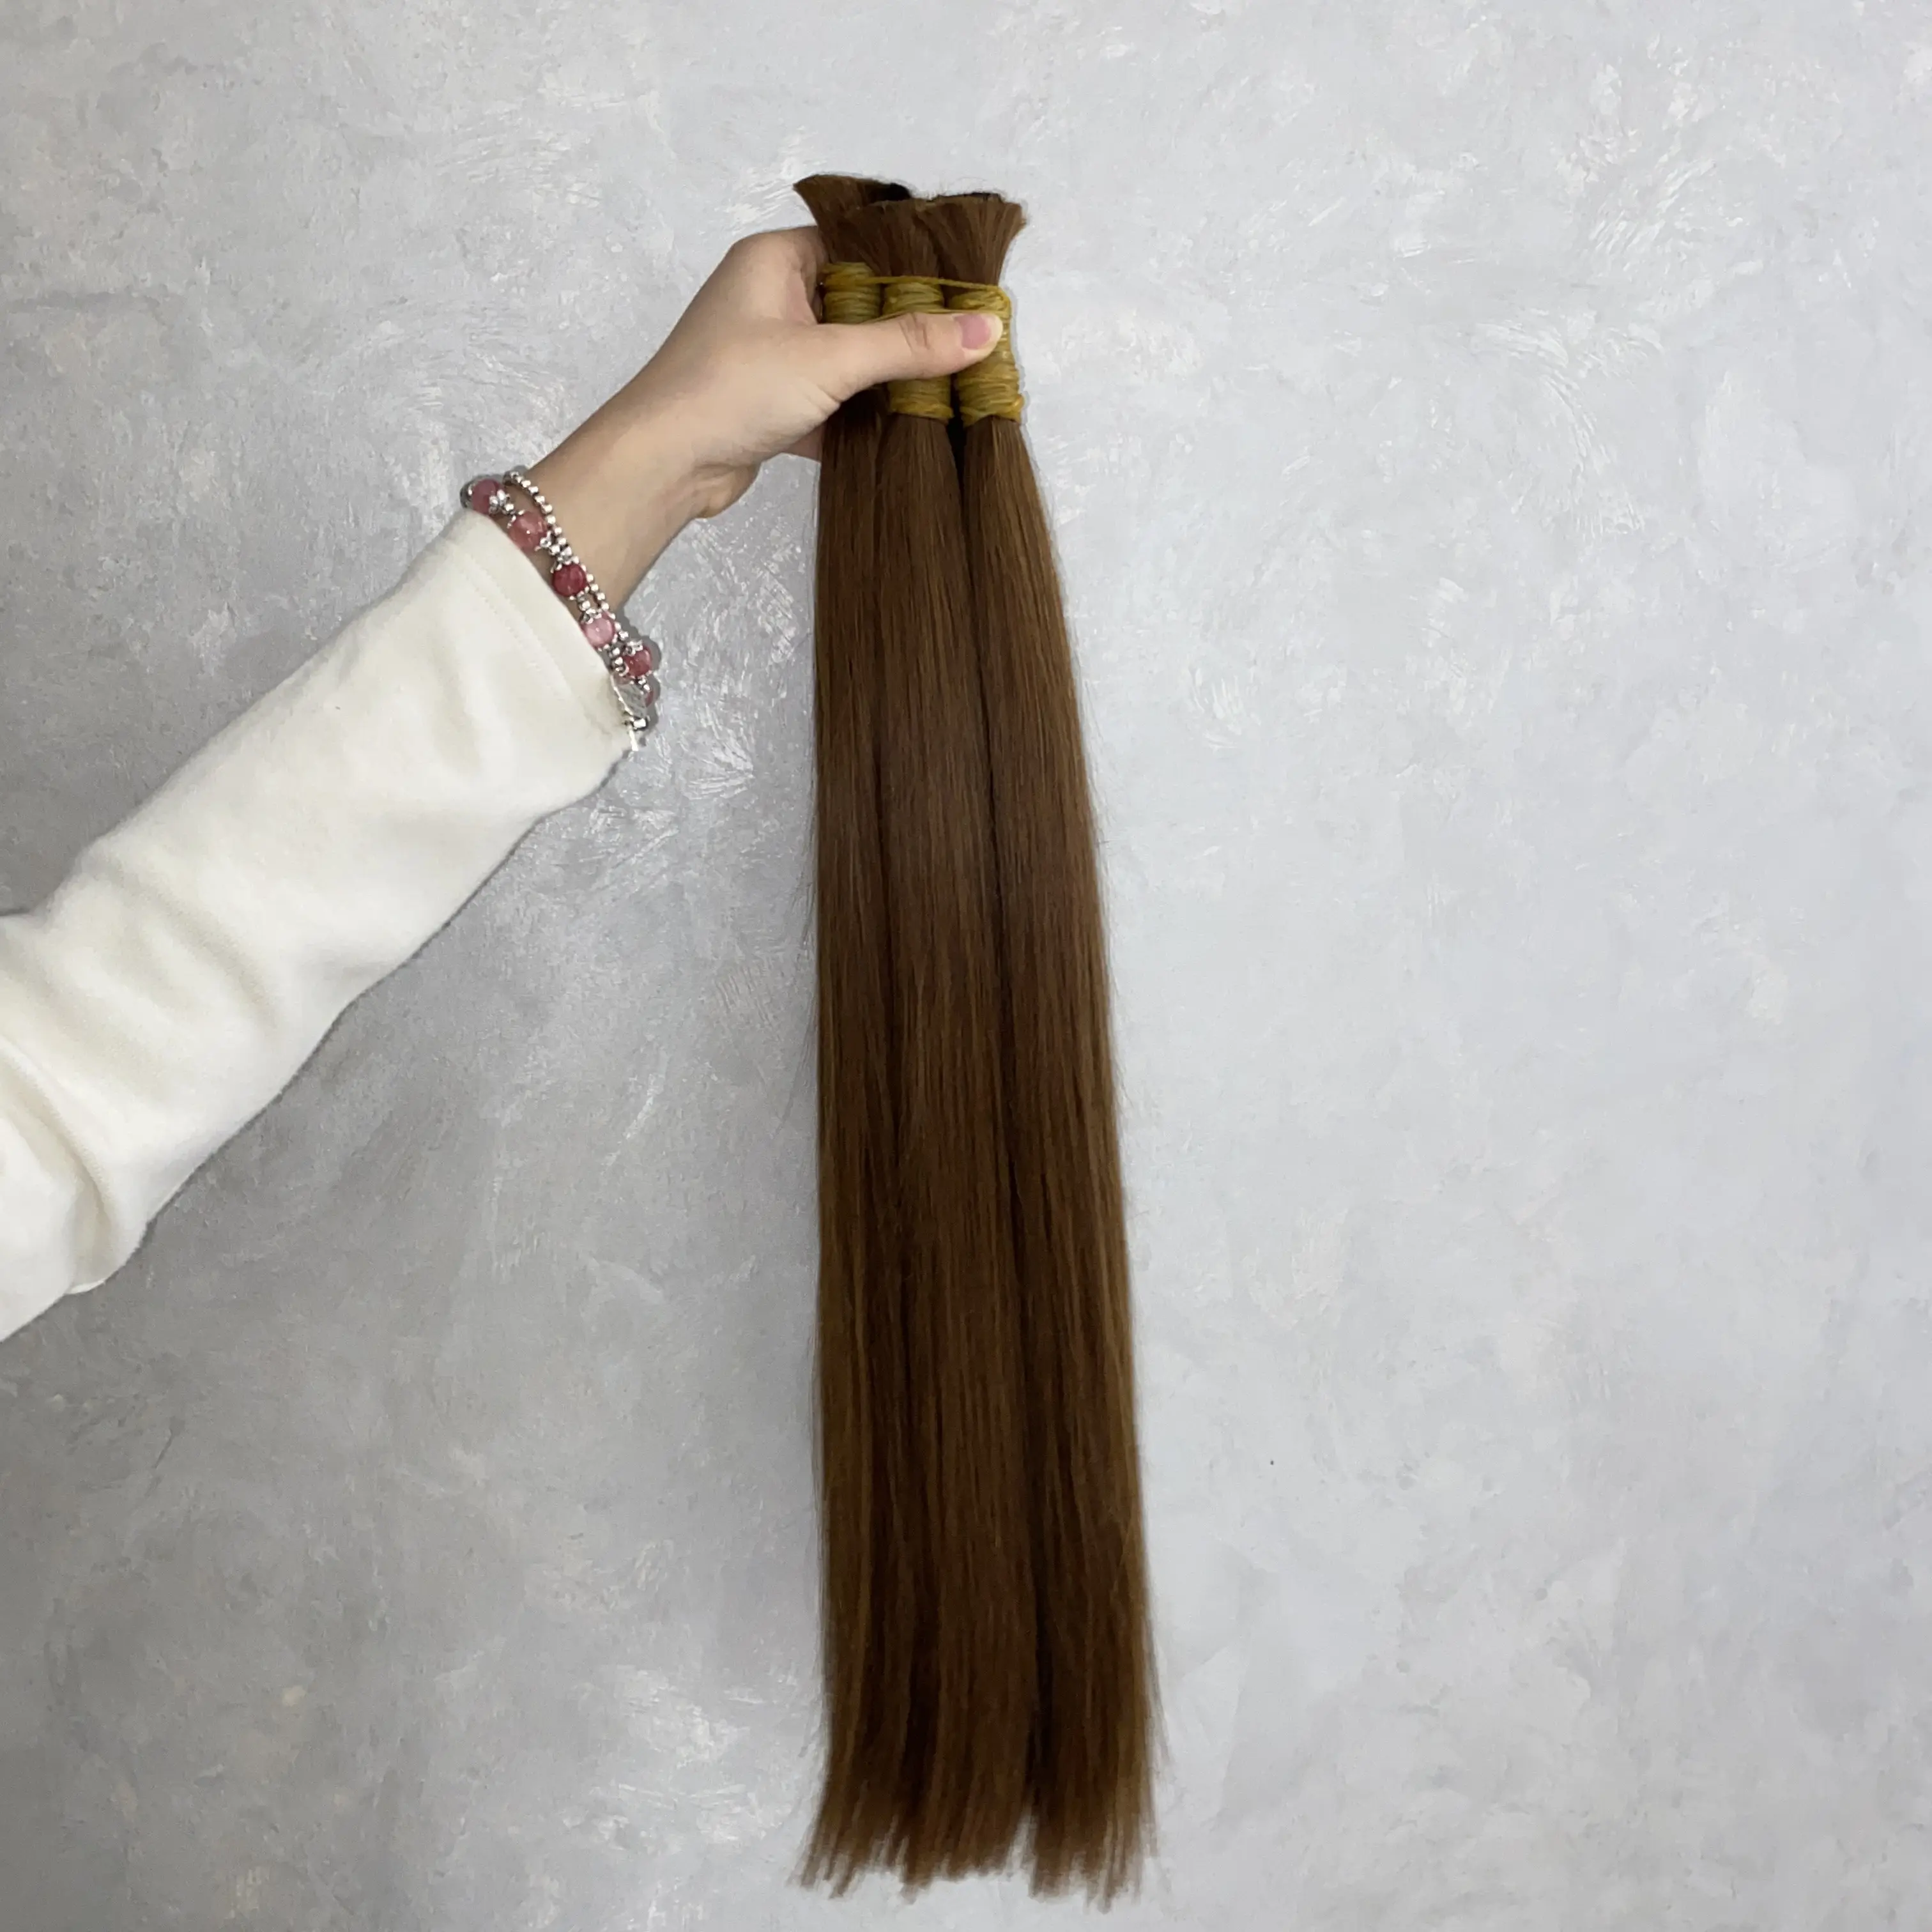 En kaliteli toptan fiyat açık kahverengi #4 renk Extensiones De Cabello Humano toplu saç uzatma 100% insan saçı kadınlar için